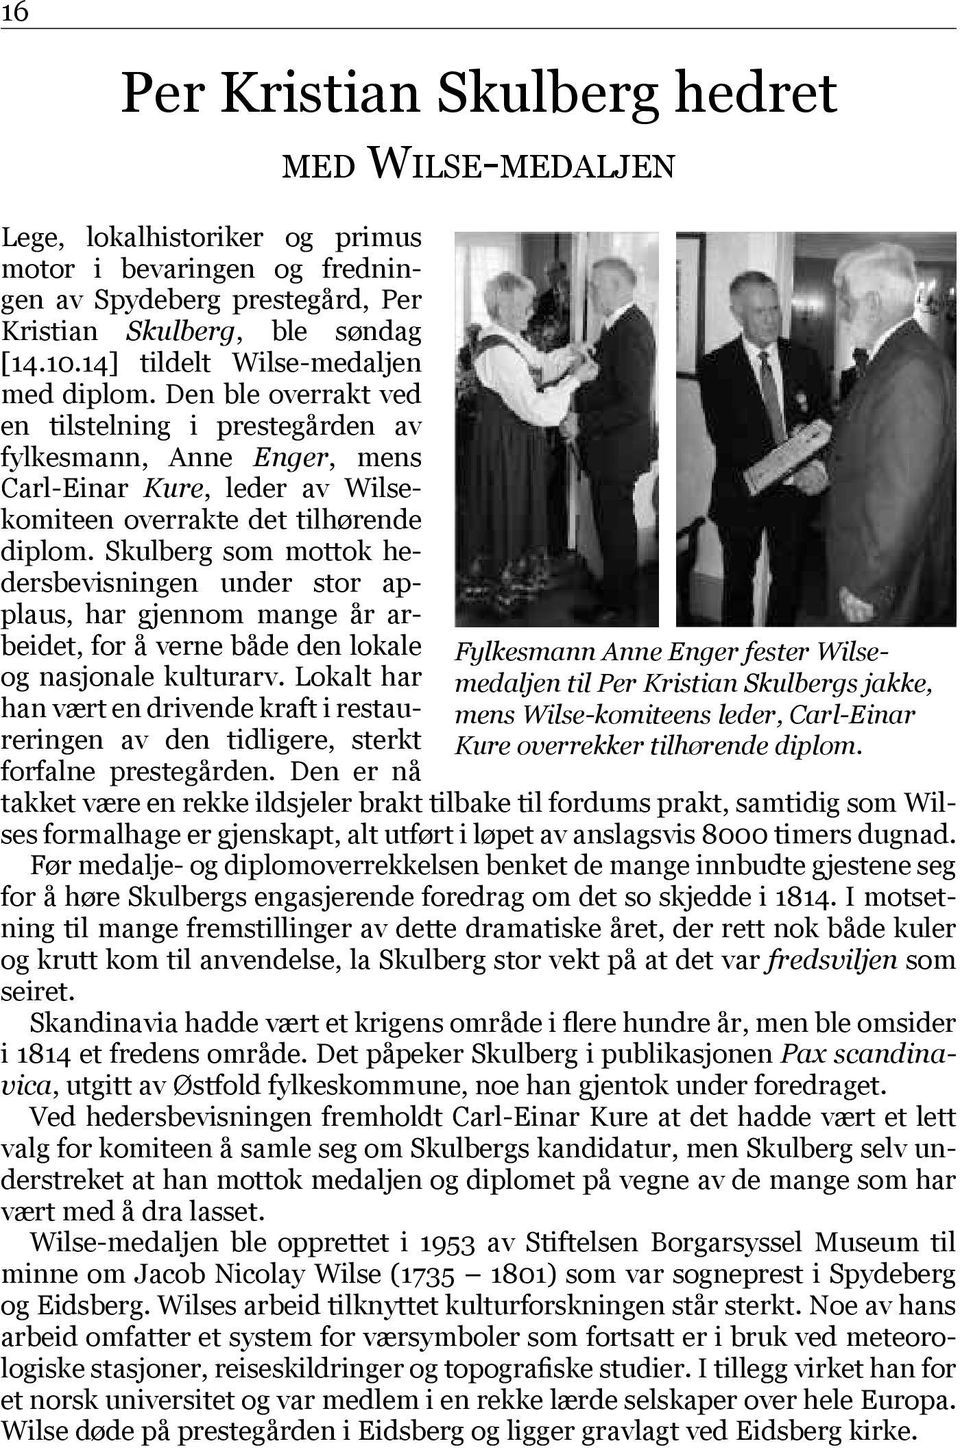 Skulberg som mottok hedersbevisningen under stor applaus, har gjen nom mange år arbeidet, for å verne både den lokale og nasjonale kulturarv.